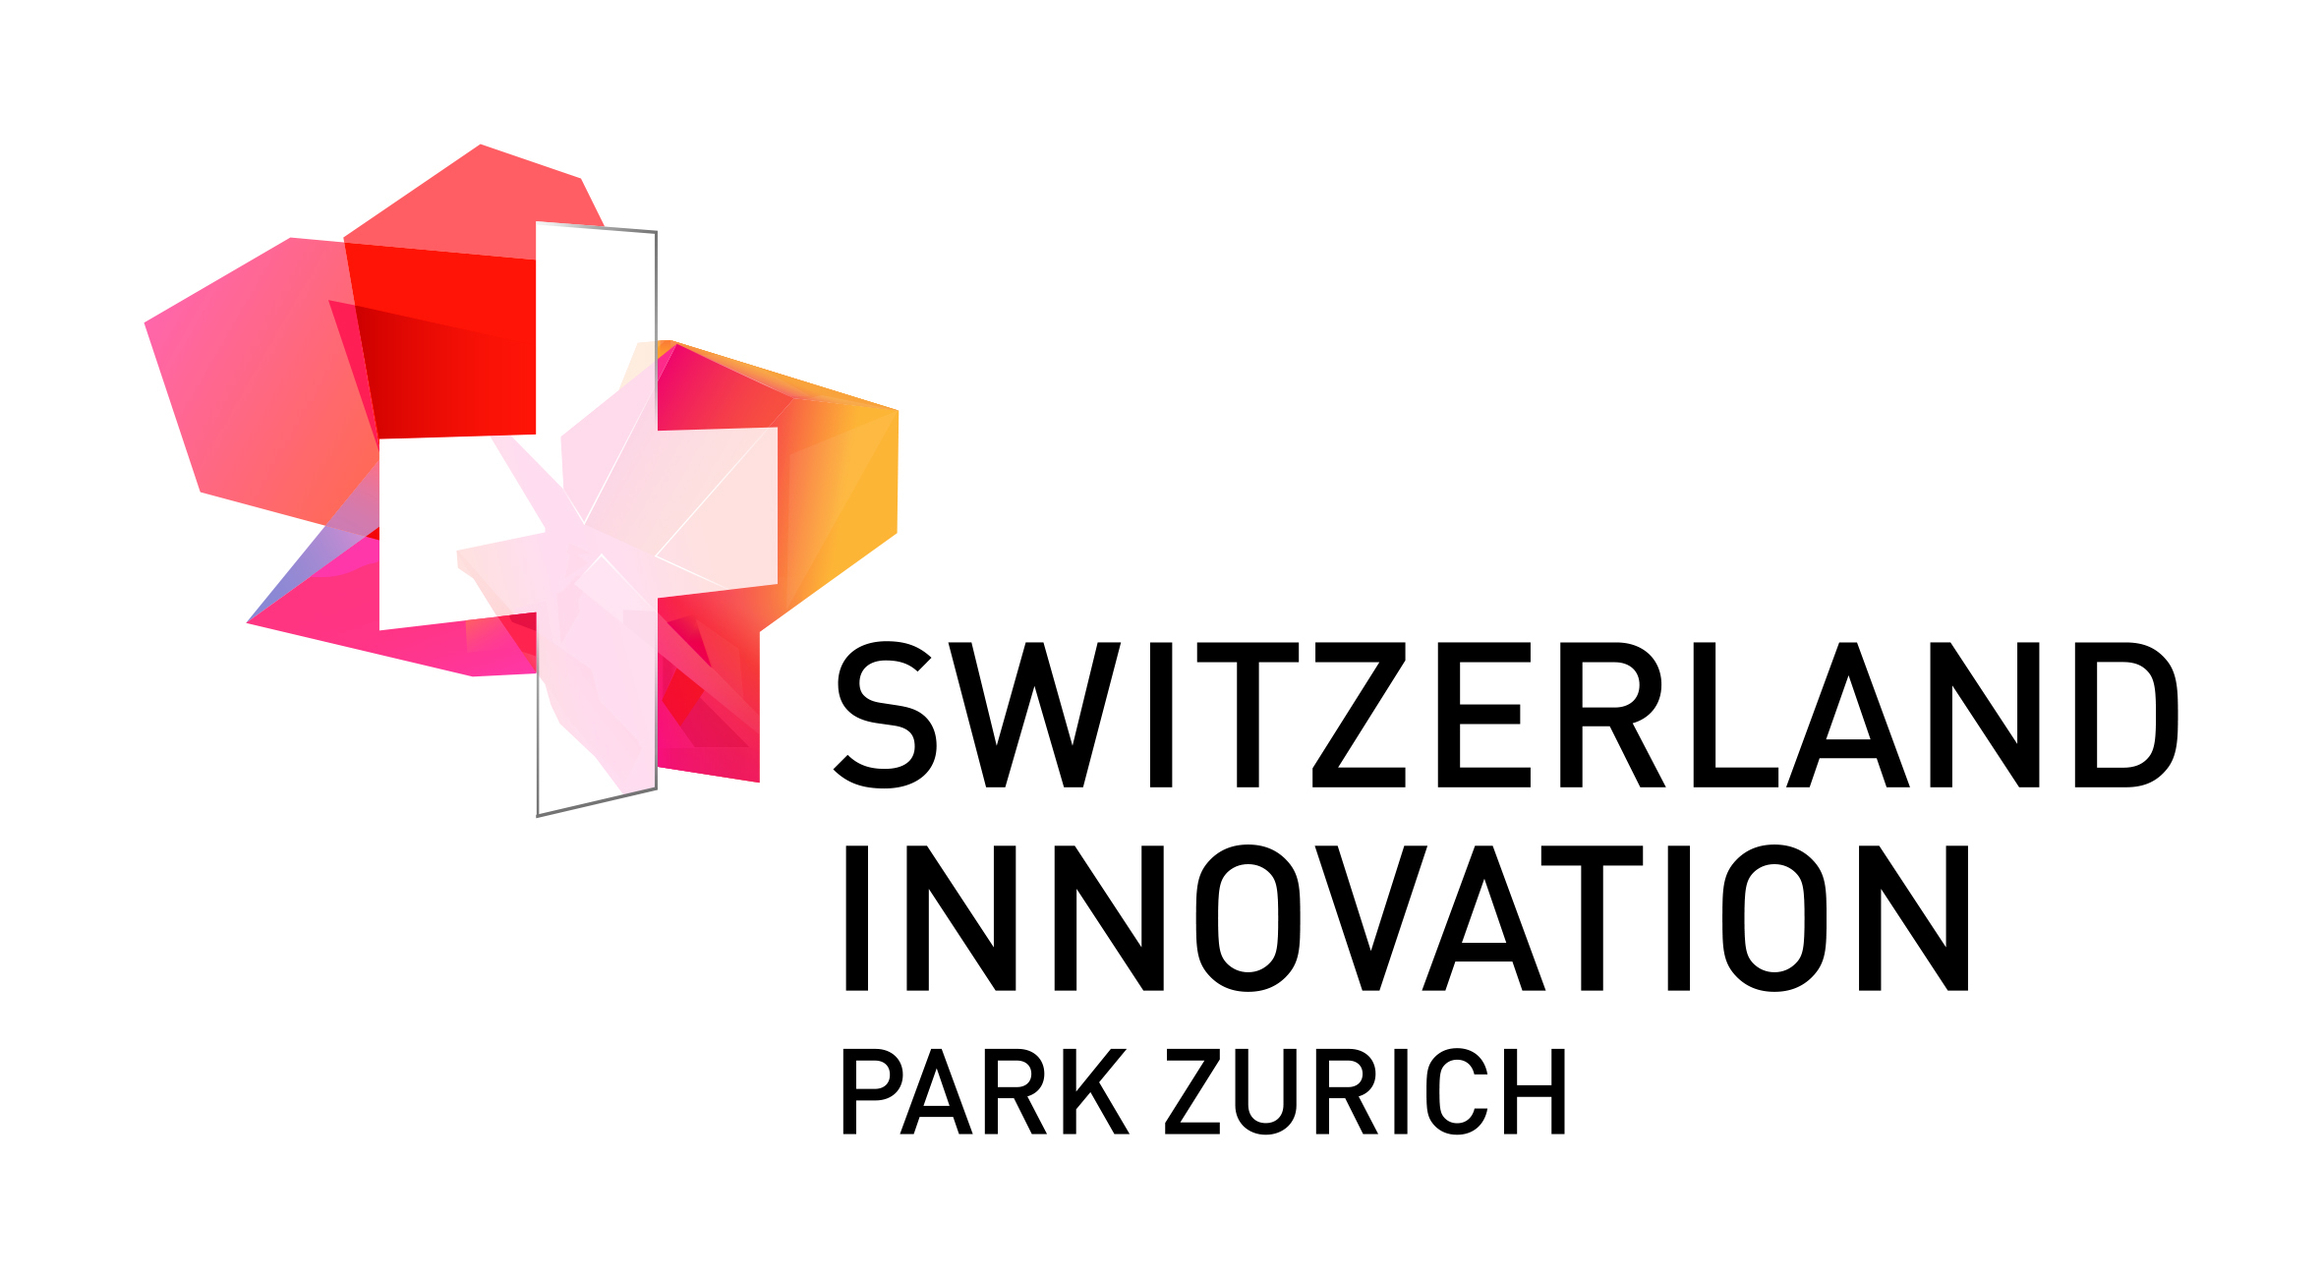 Švajčiarsky inovačný park Zurich: logo